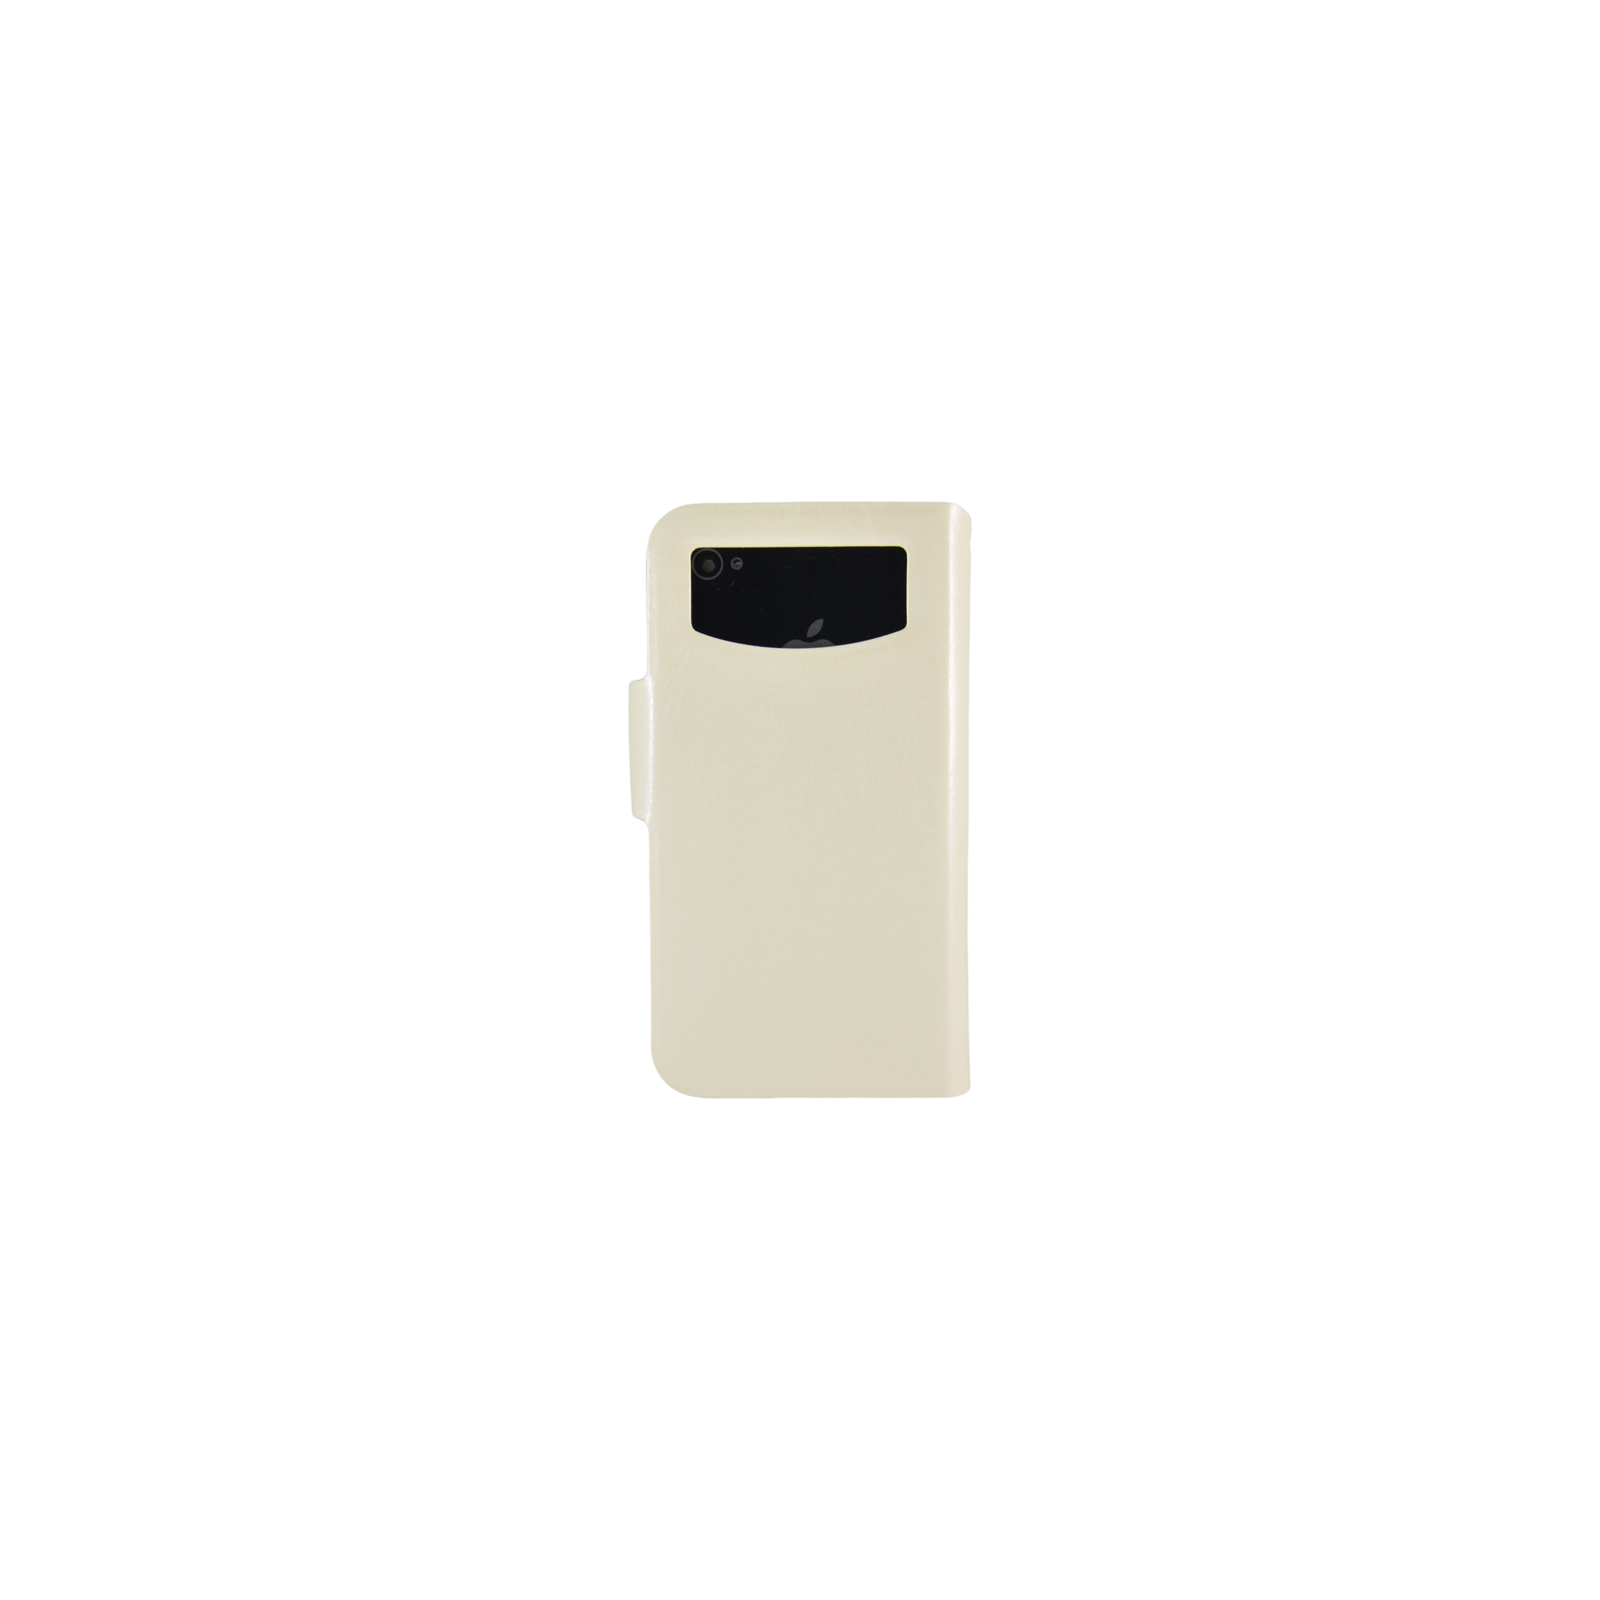 Чехол для мобильного телефона Pro-case універсальний Smartphone Universal Leather Case, 3.0-4.0 inc (SULC3wh) изображение 2